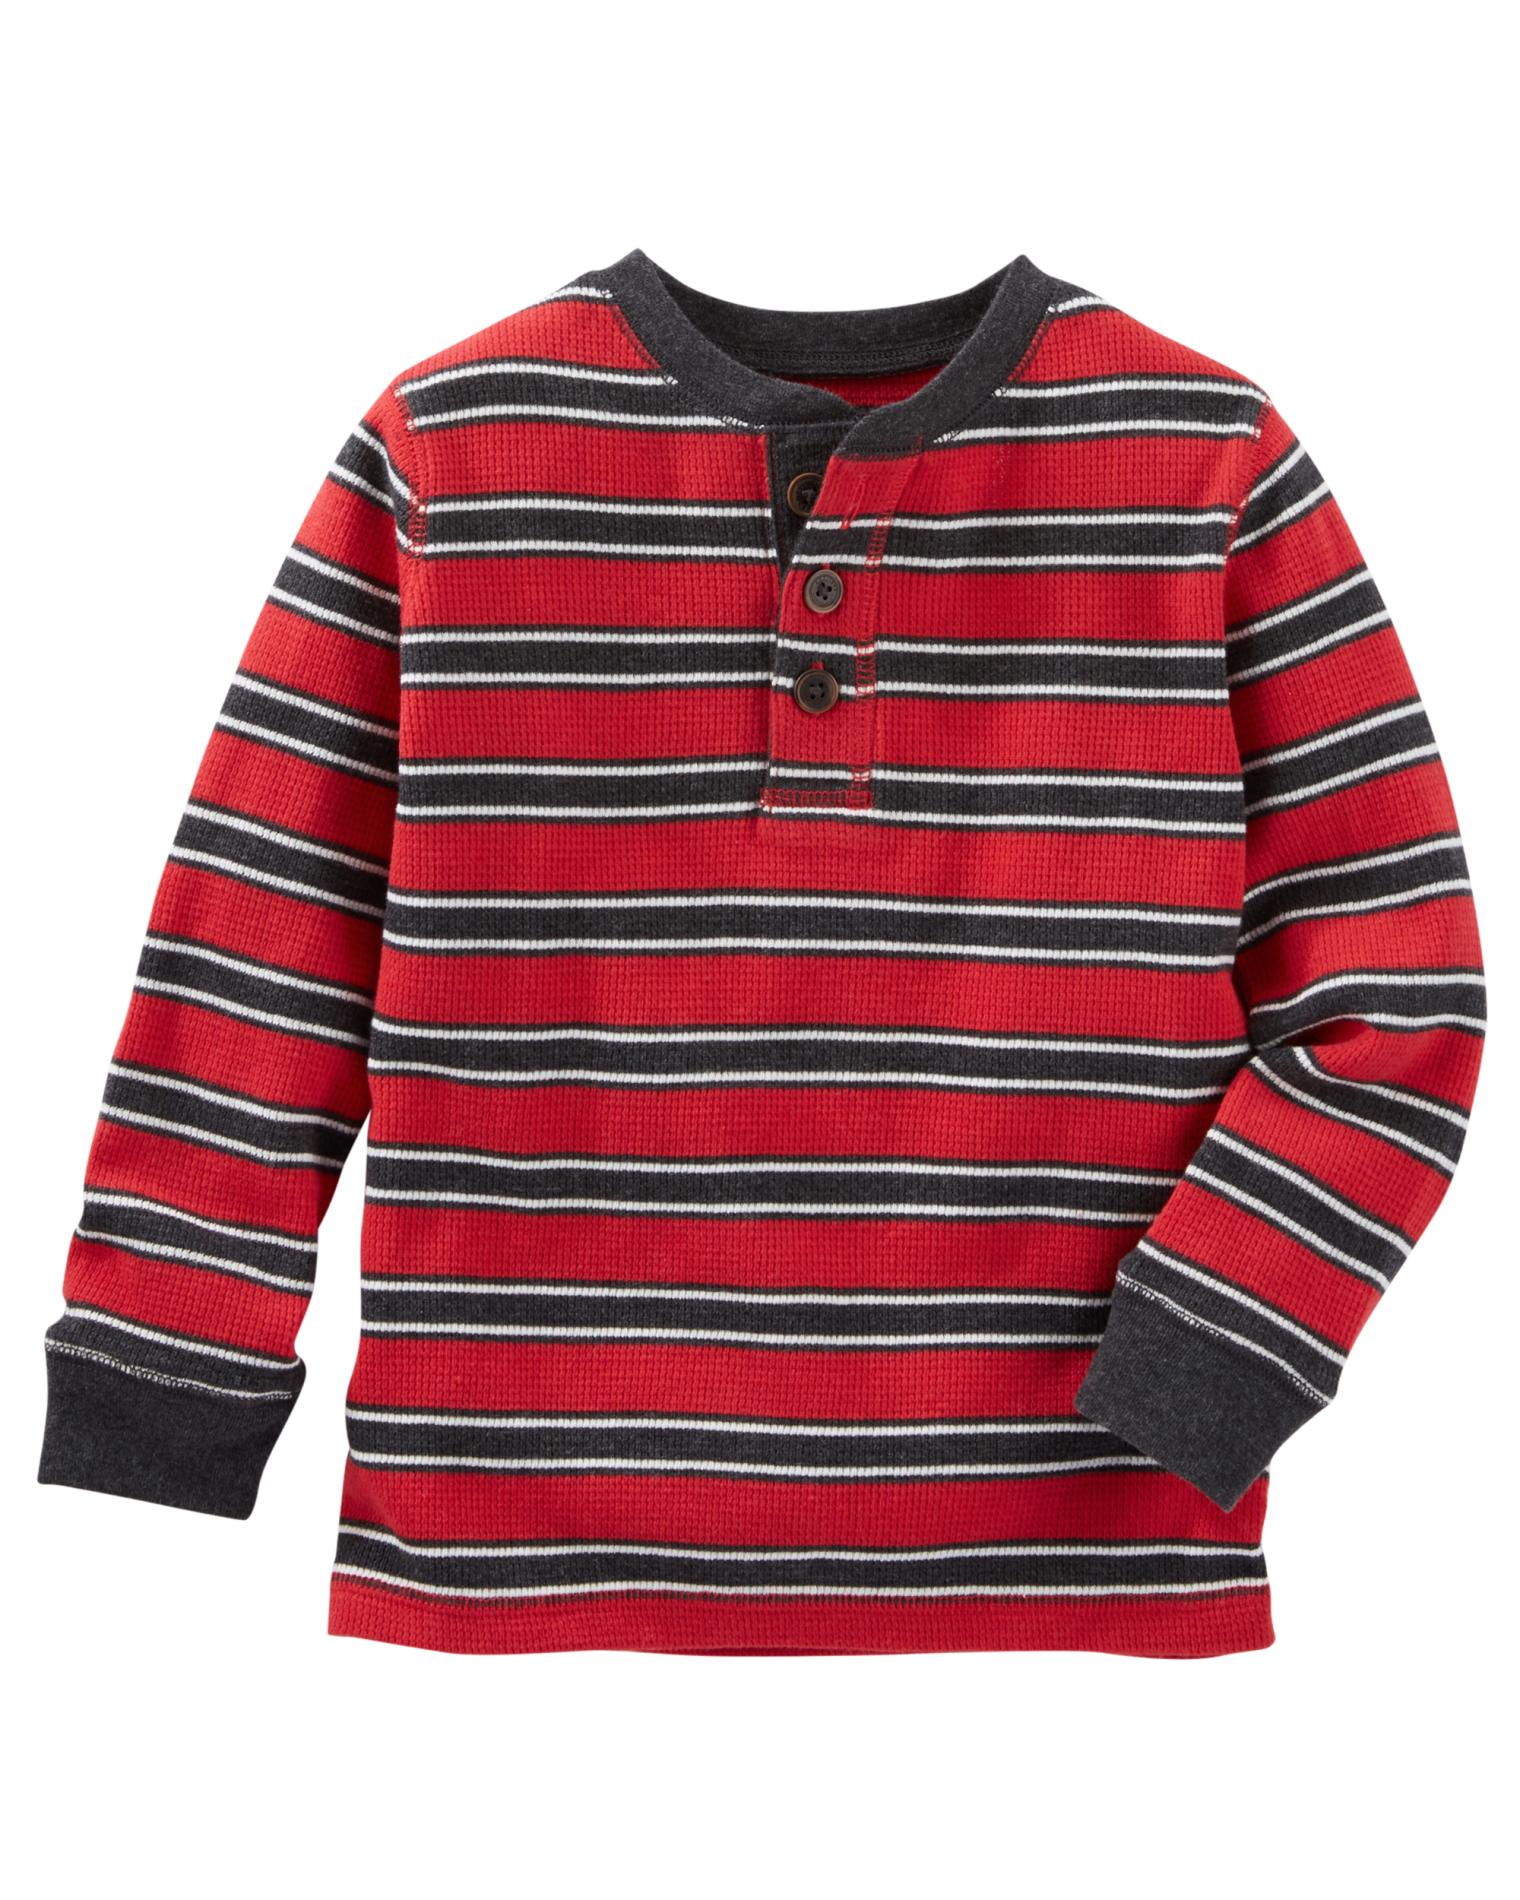 OshKosh Toddler Boys' Thermal Henley Shirt - Striped